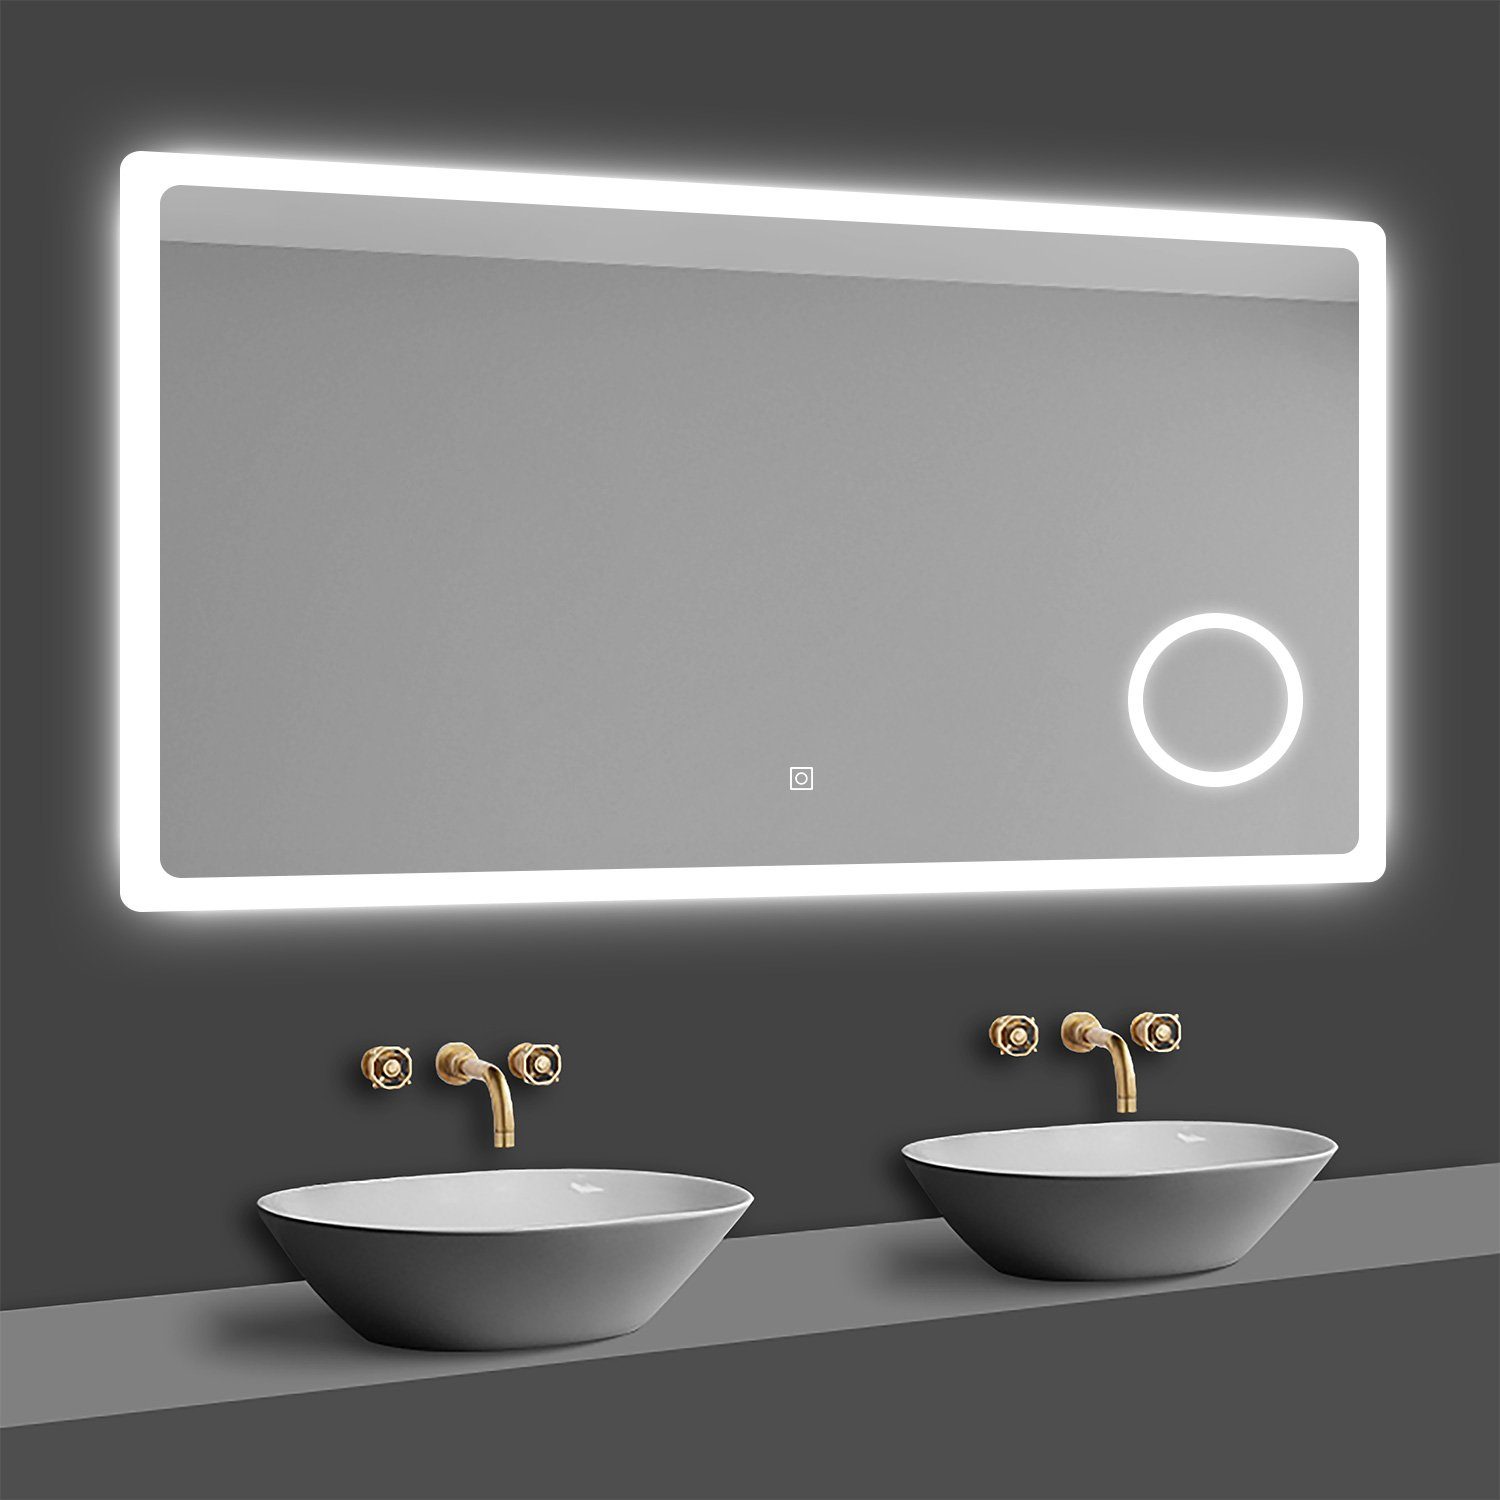 Beschlagfrei, 3x Wandschalter Beleuchtung Schminkspiegel, Dimmbar duschspa Touch, Kalt/Neutral/Warmweiß LED Badspiegel LED